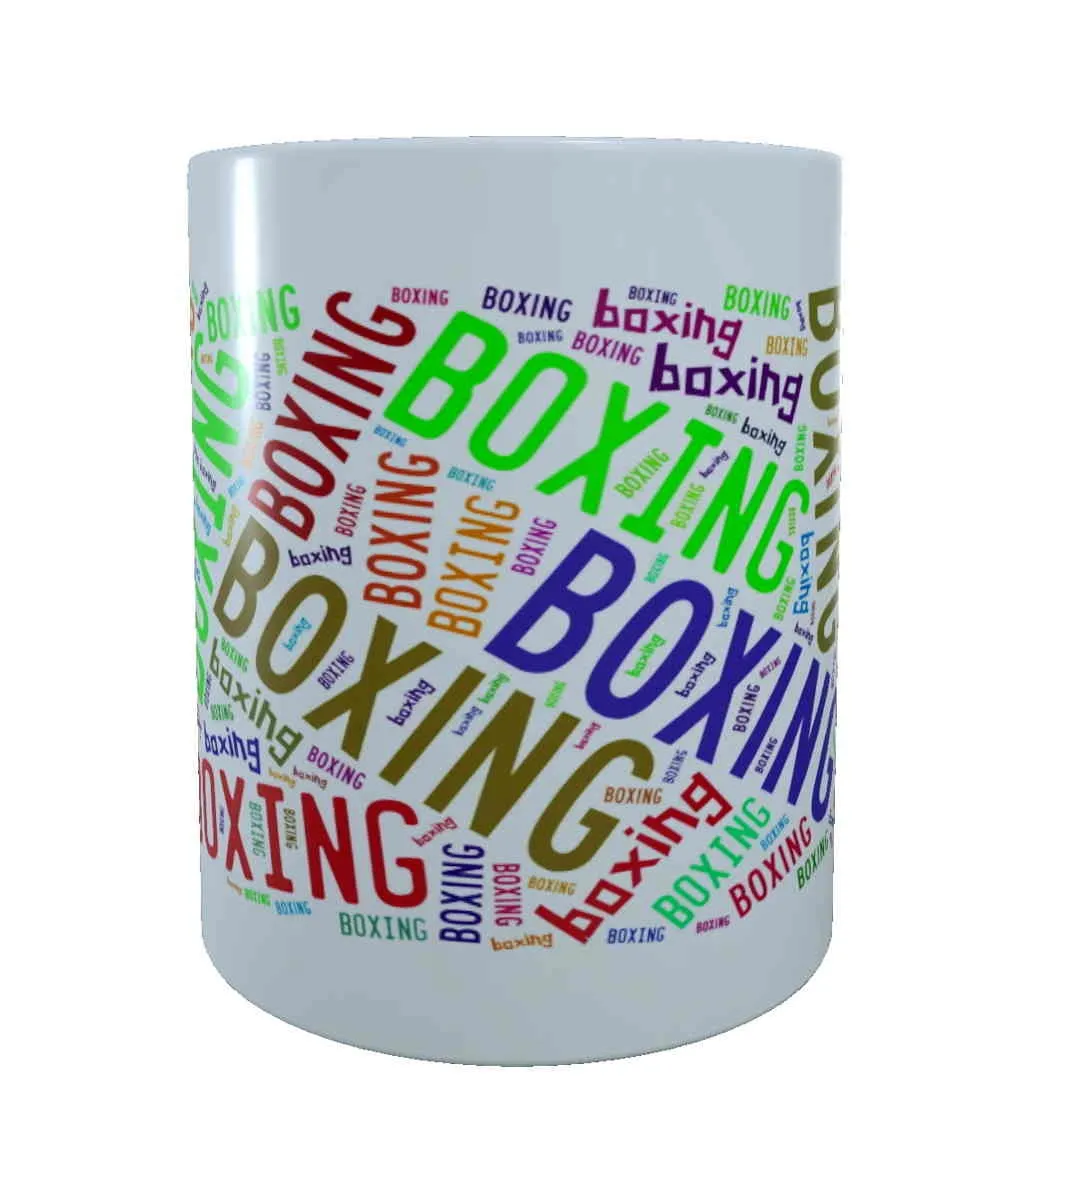 Tasse weiß bedruckt mit Boxing bunt